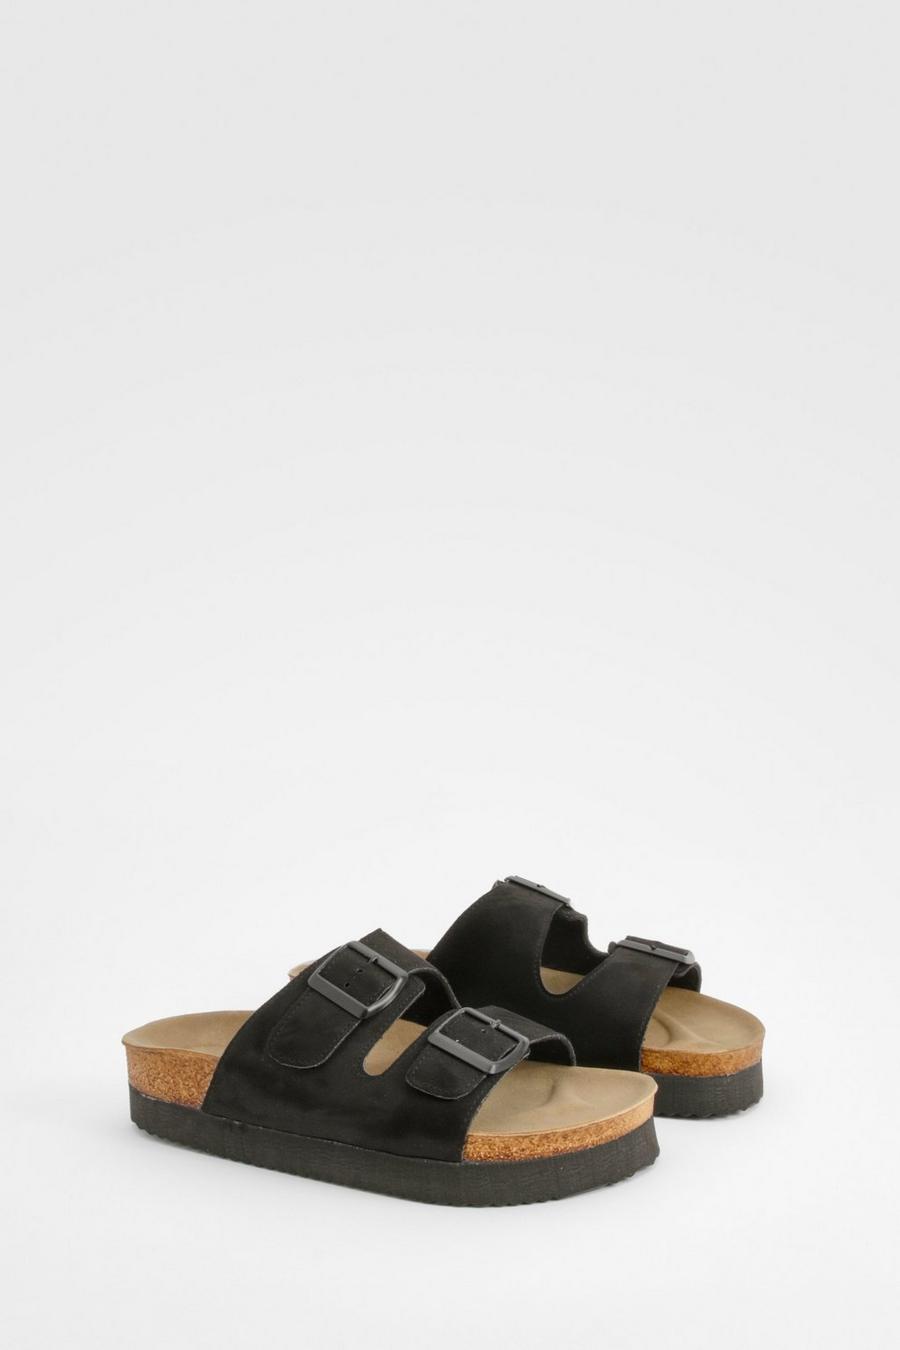 Sandalias de holgura ancha con plataforma, hebilla doble y plantilla moldeada, Black